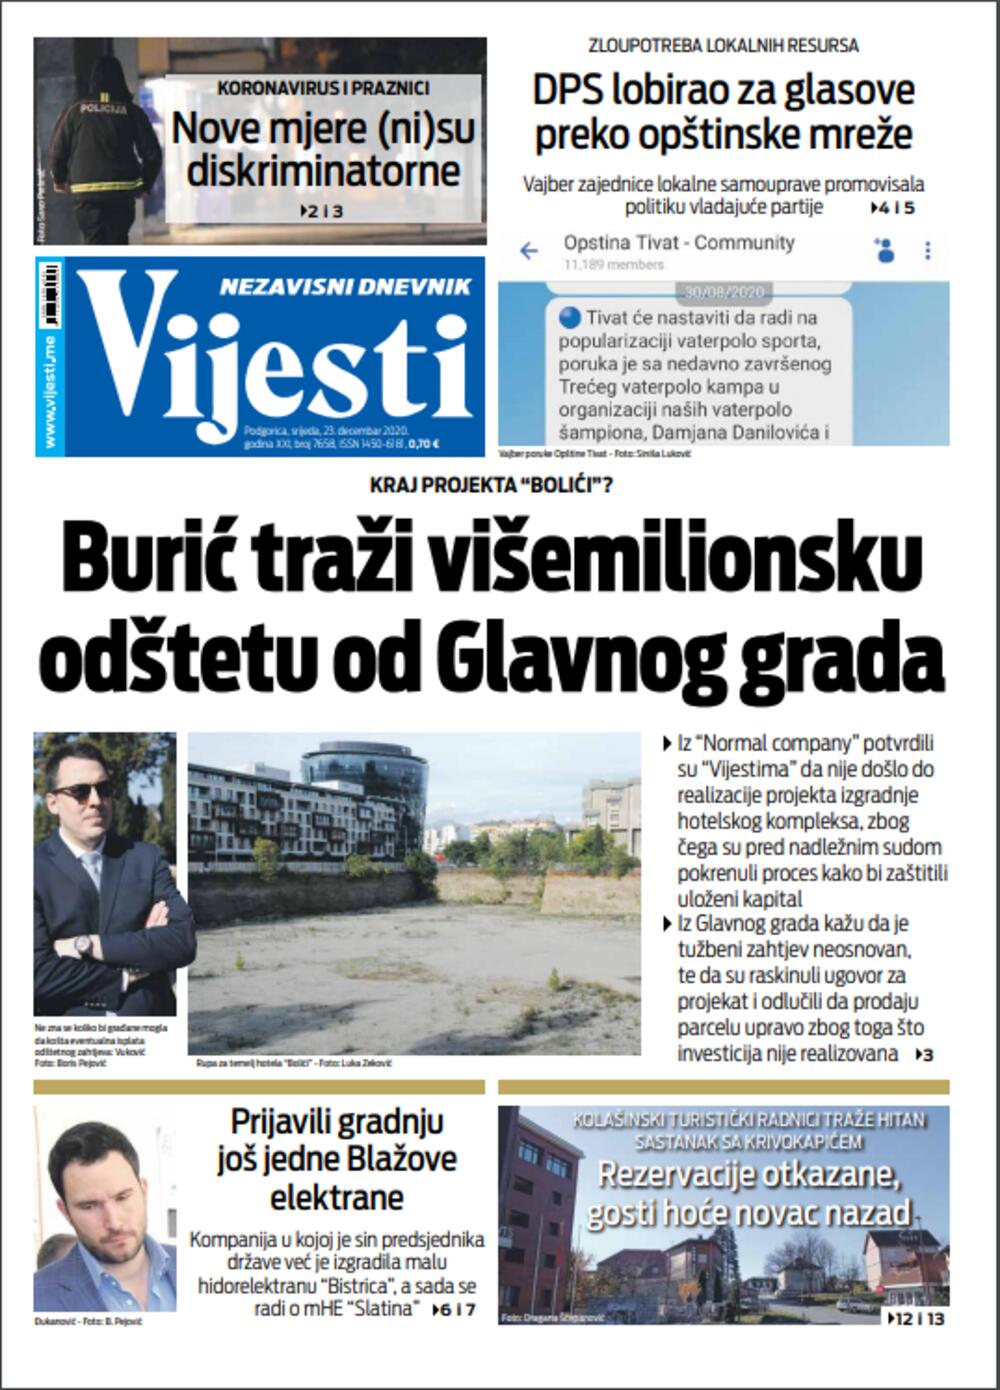 Naslovna strana "Vijesti" za utorak 23. decembar 2020. godine, Foto: Vijesti